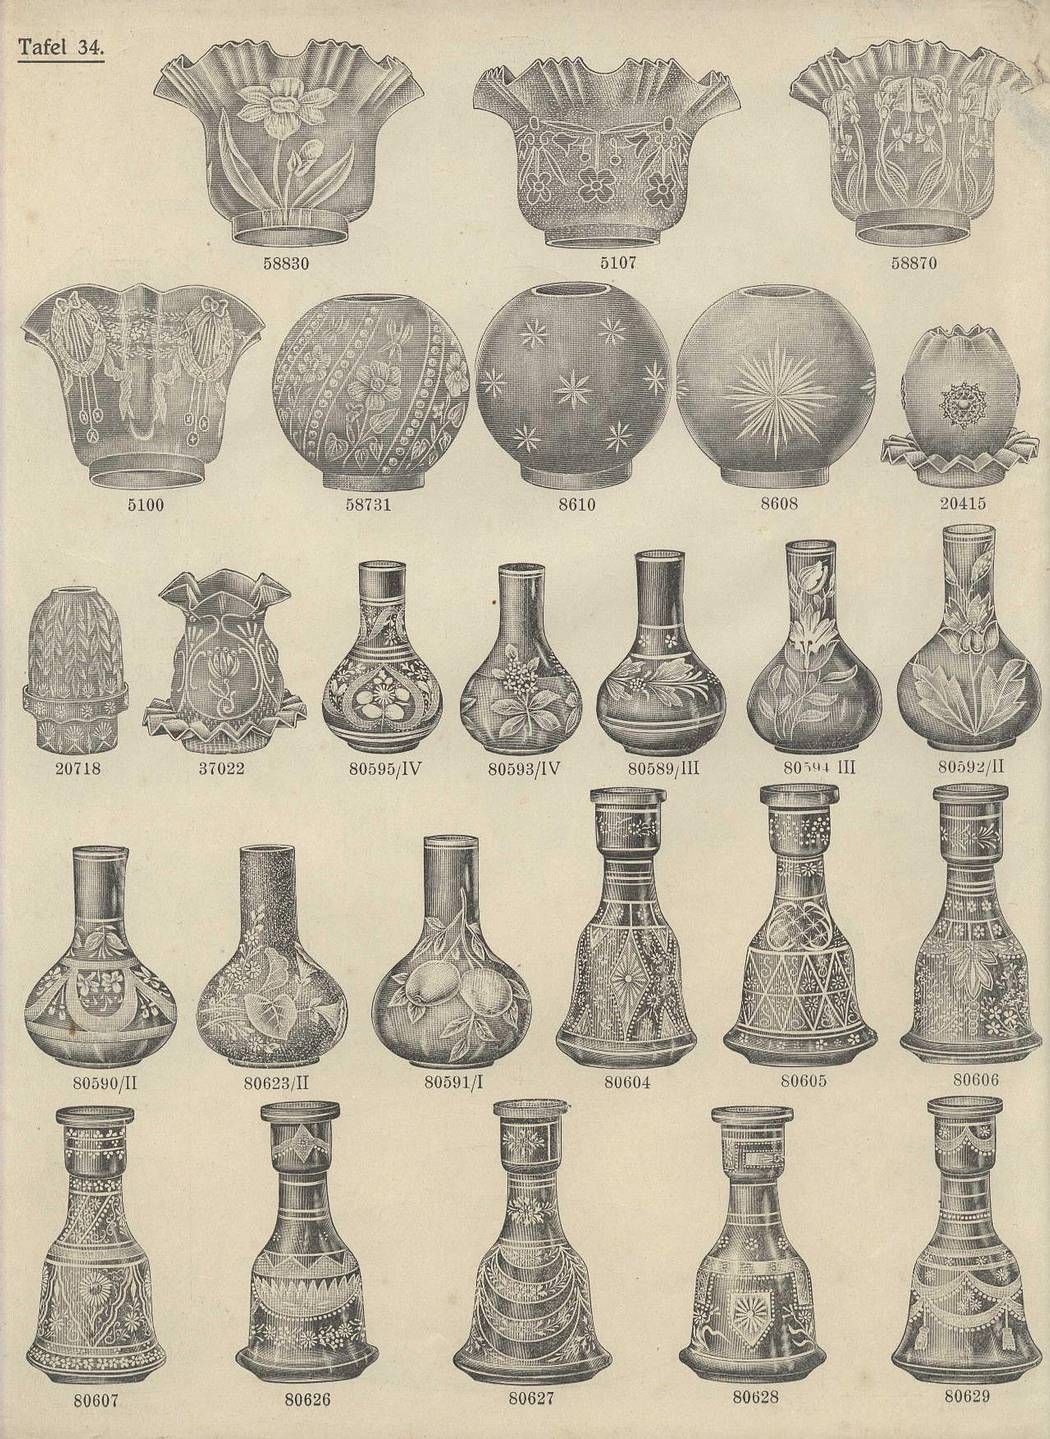 Karta katalogu z wyrobami szklanymi przedstawiająca 26 różnych form kloszy do lamp.